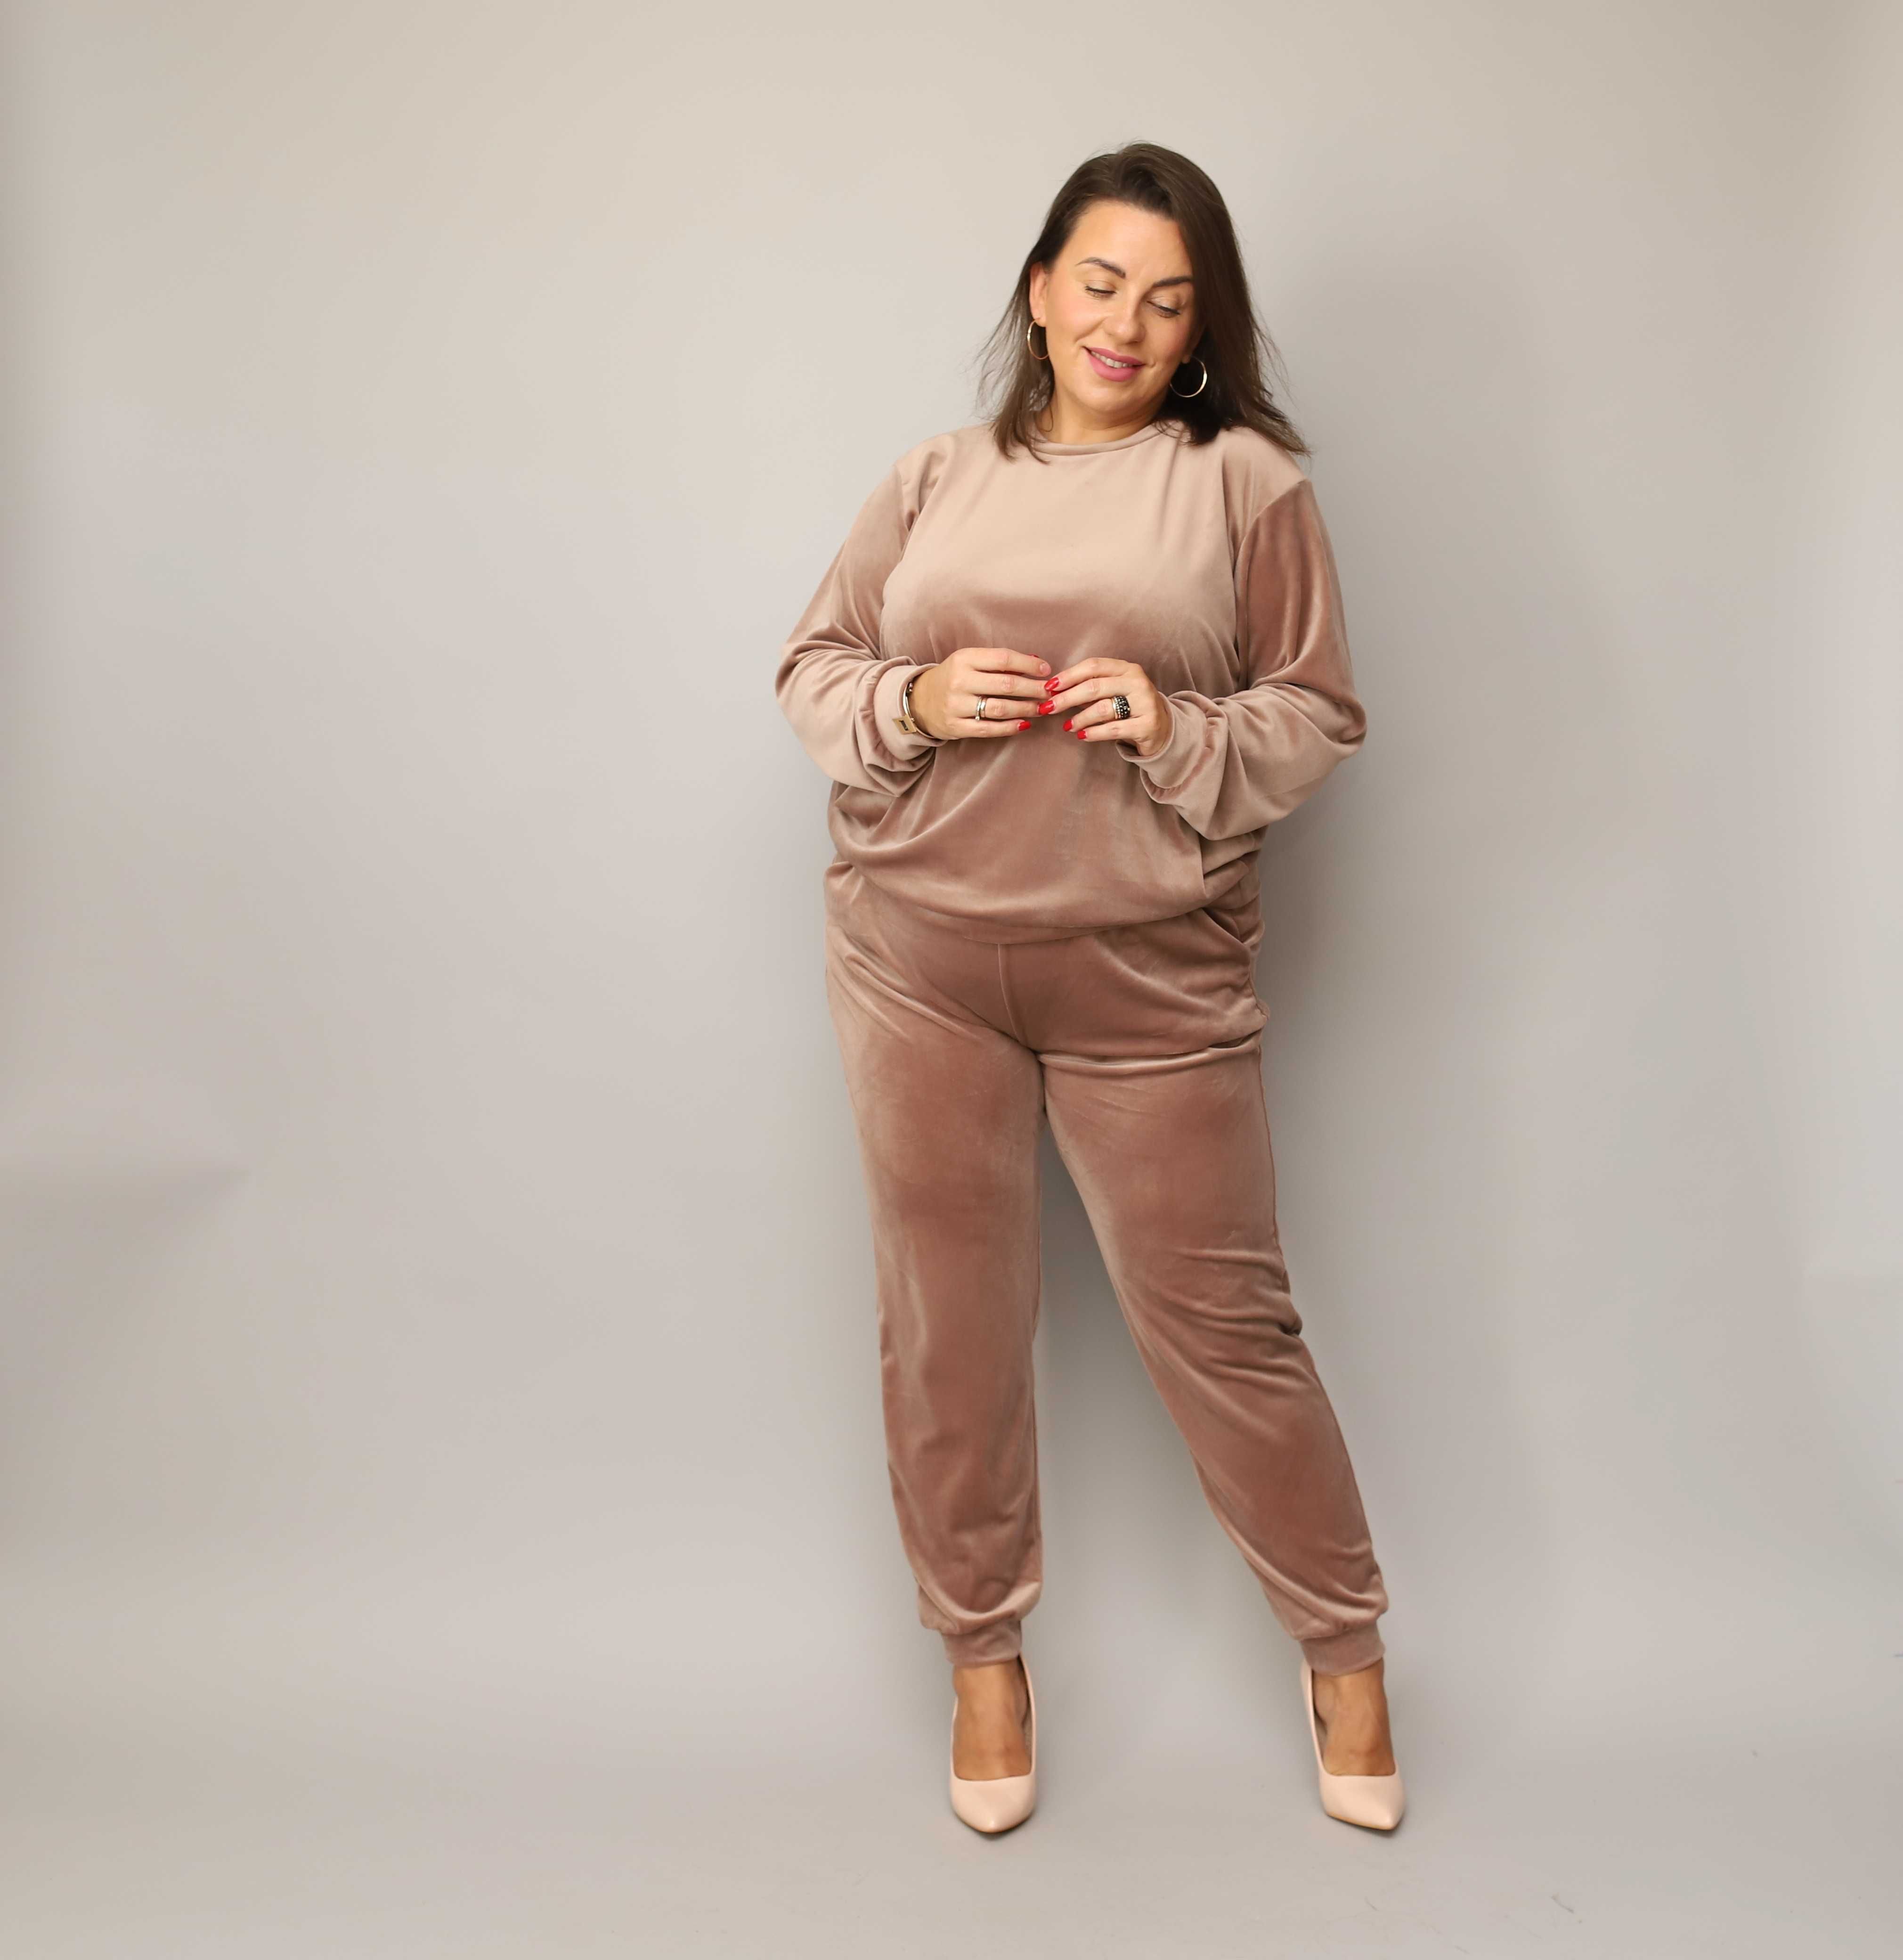 Beżowy DRES WELUROWY damski komplet bluza + spodnie JESIEŃ 2XL 44